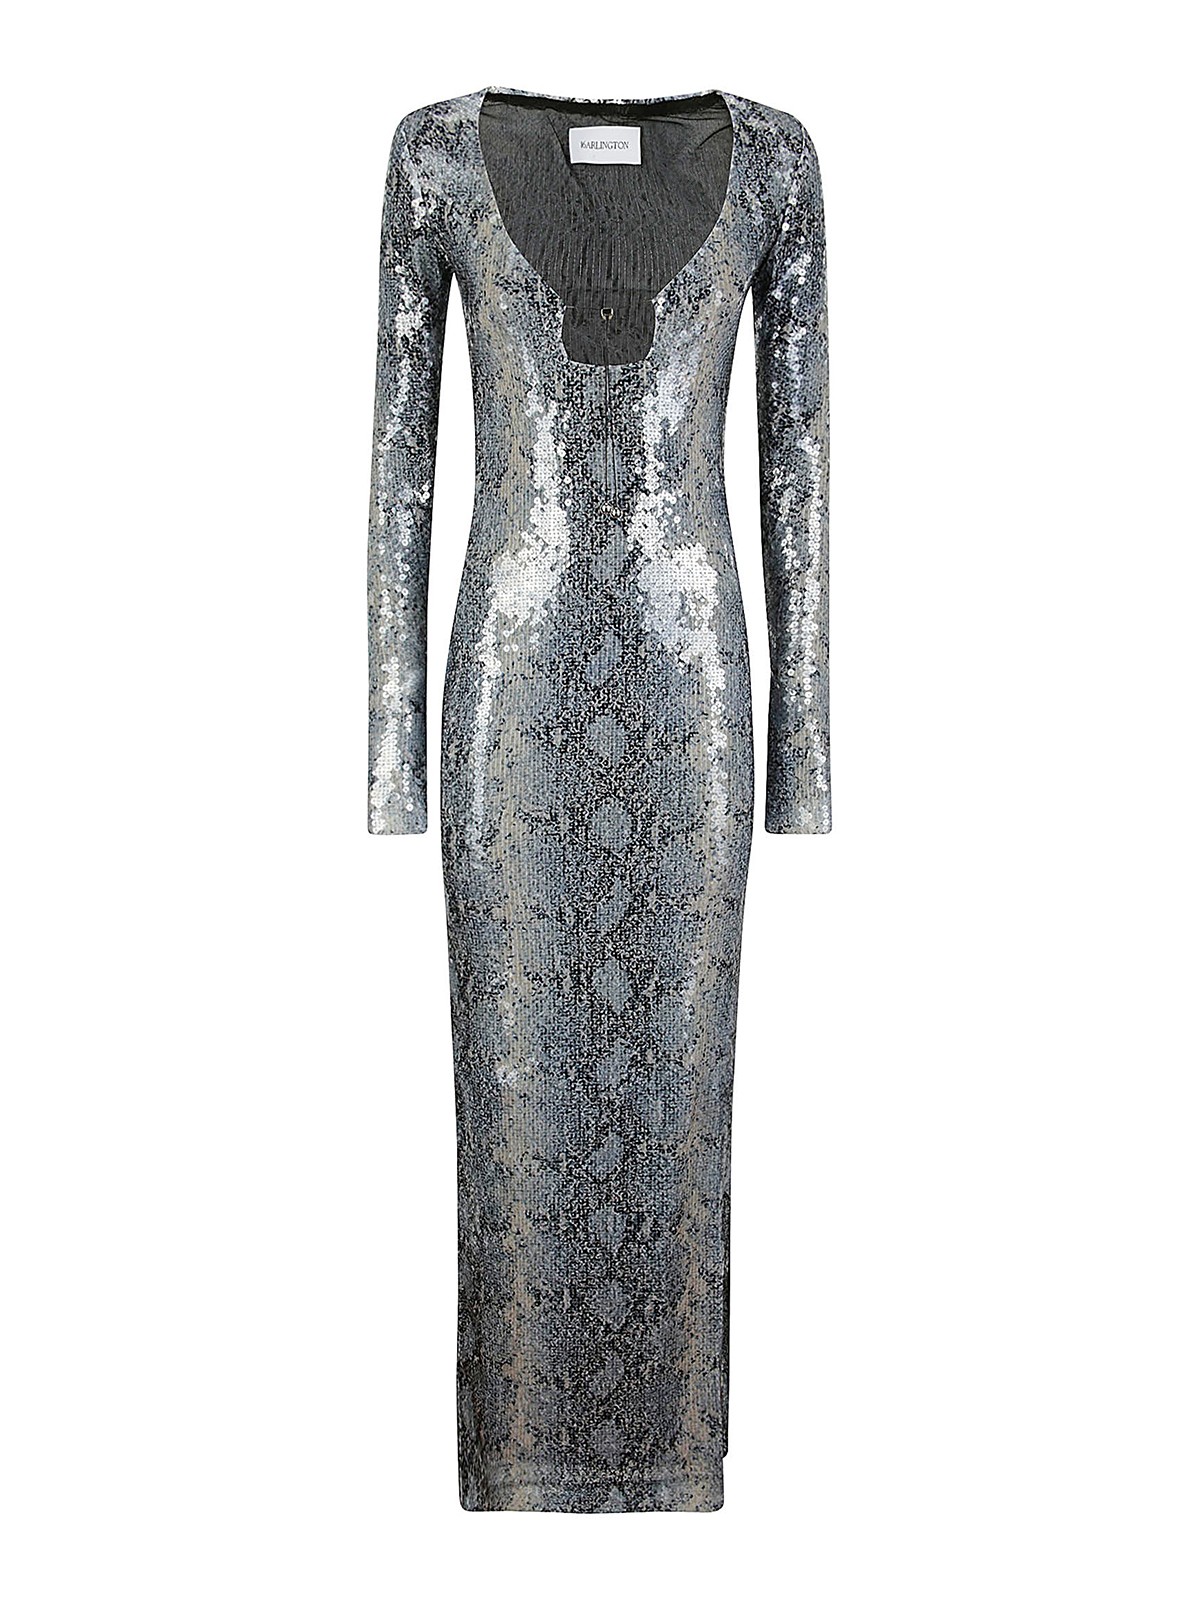 16arlington Dress In Silver